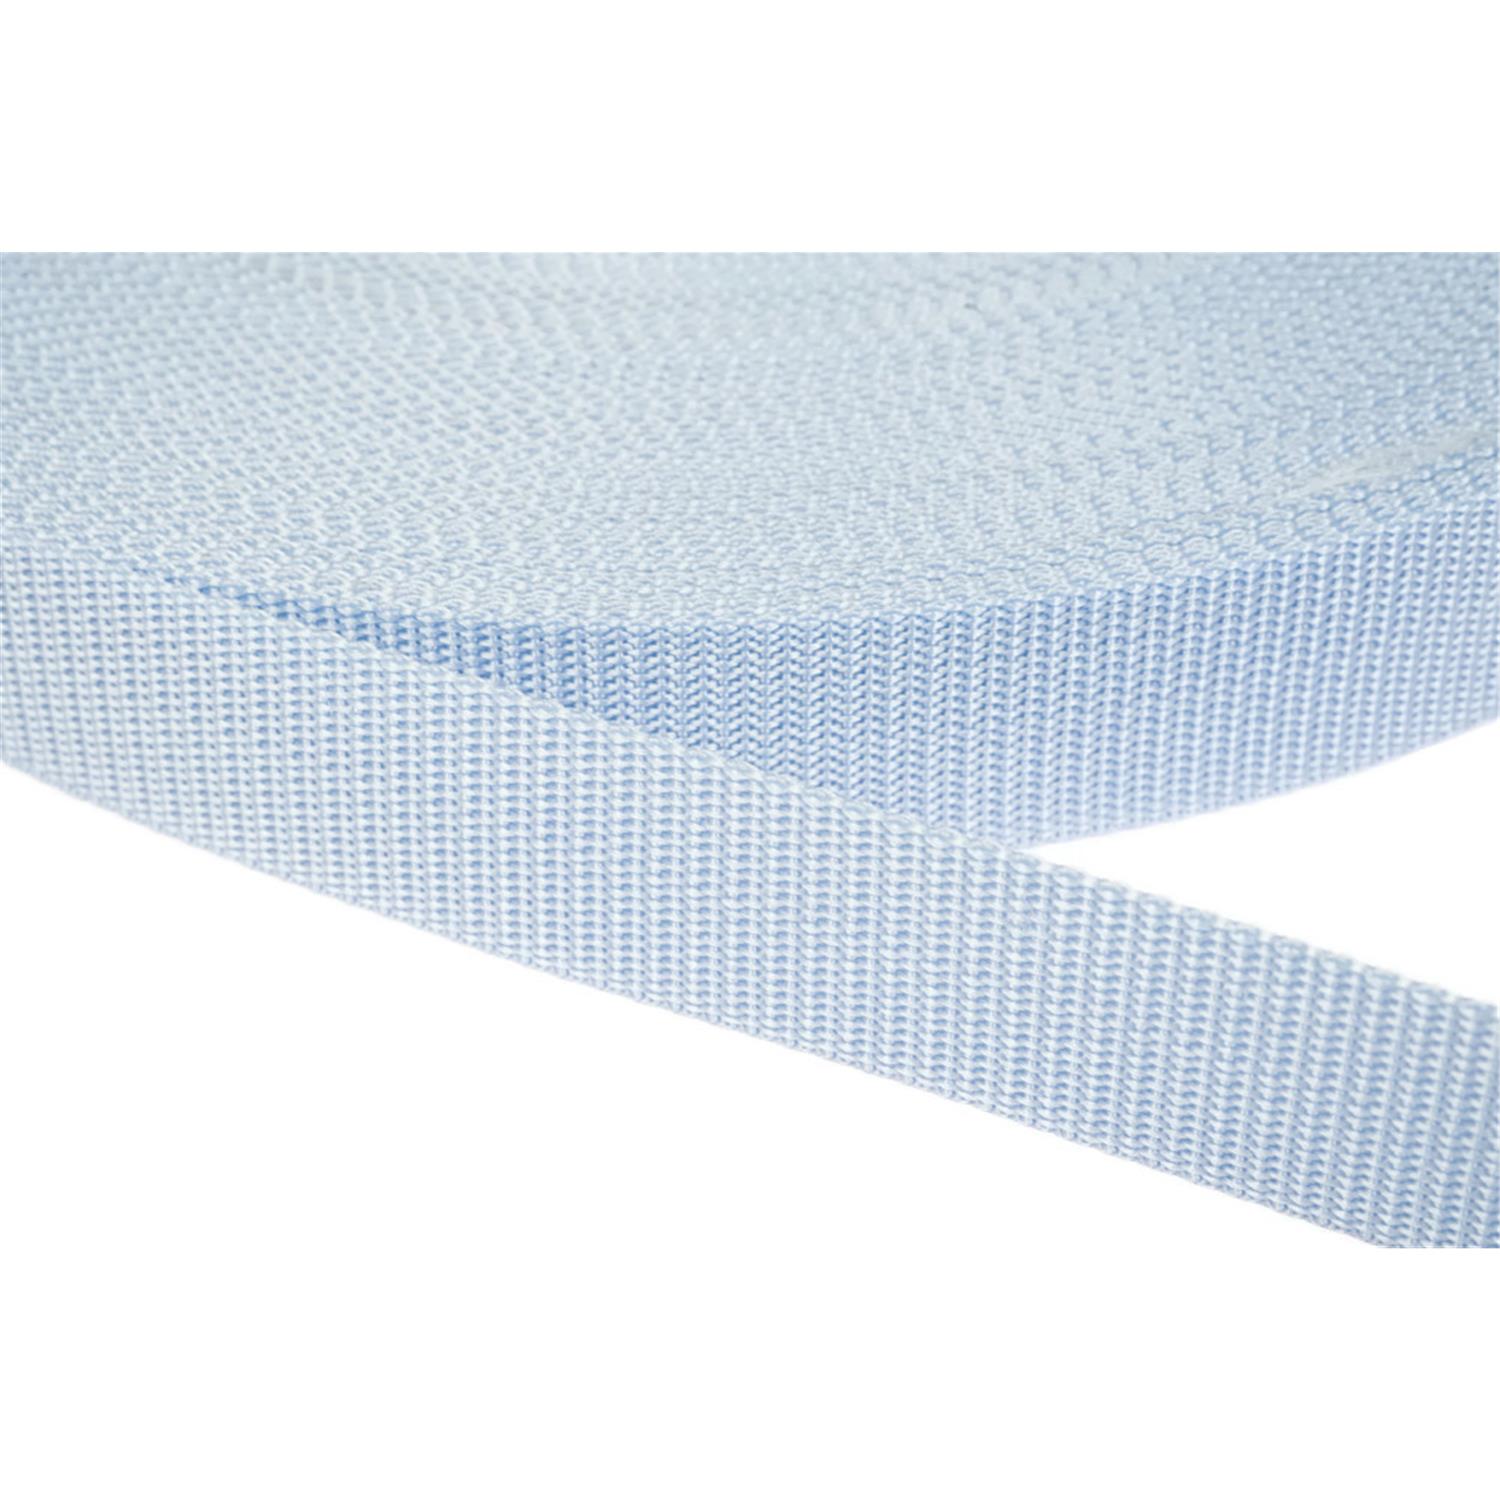 Gurtband 25mm breit aus Polypropylen in 41 Farben 25 - hellblau 6 Meter